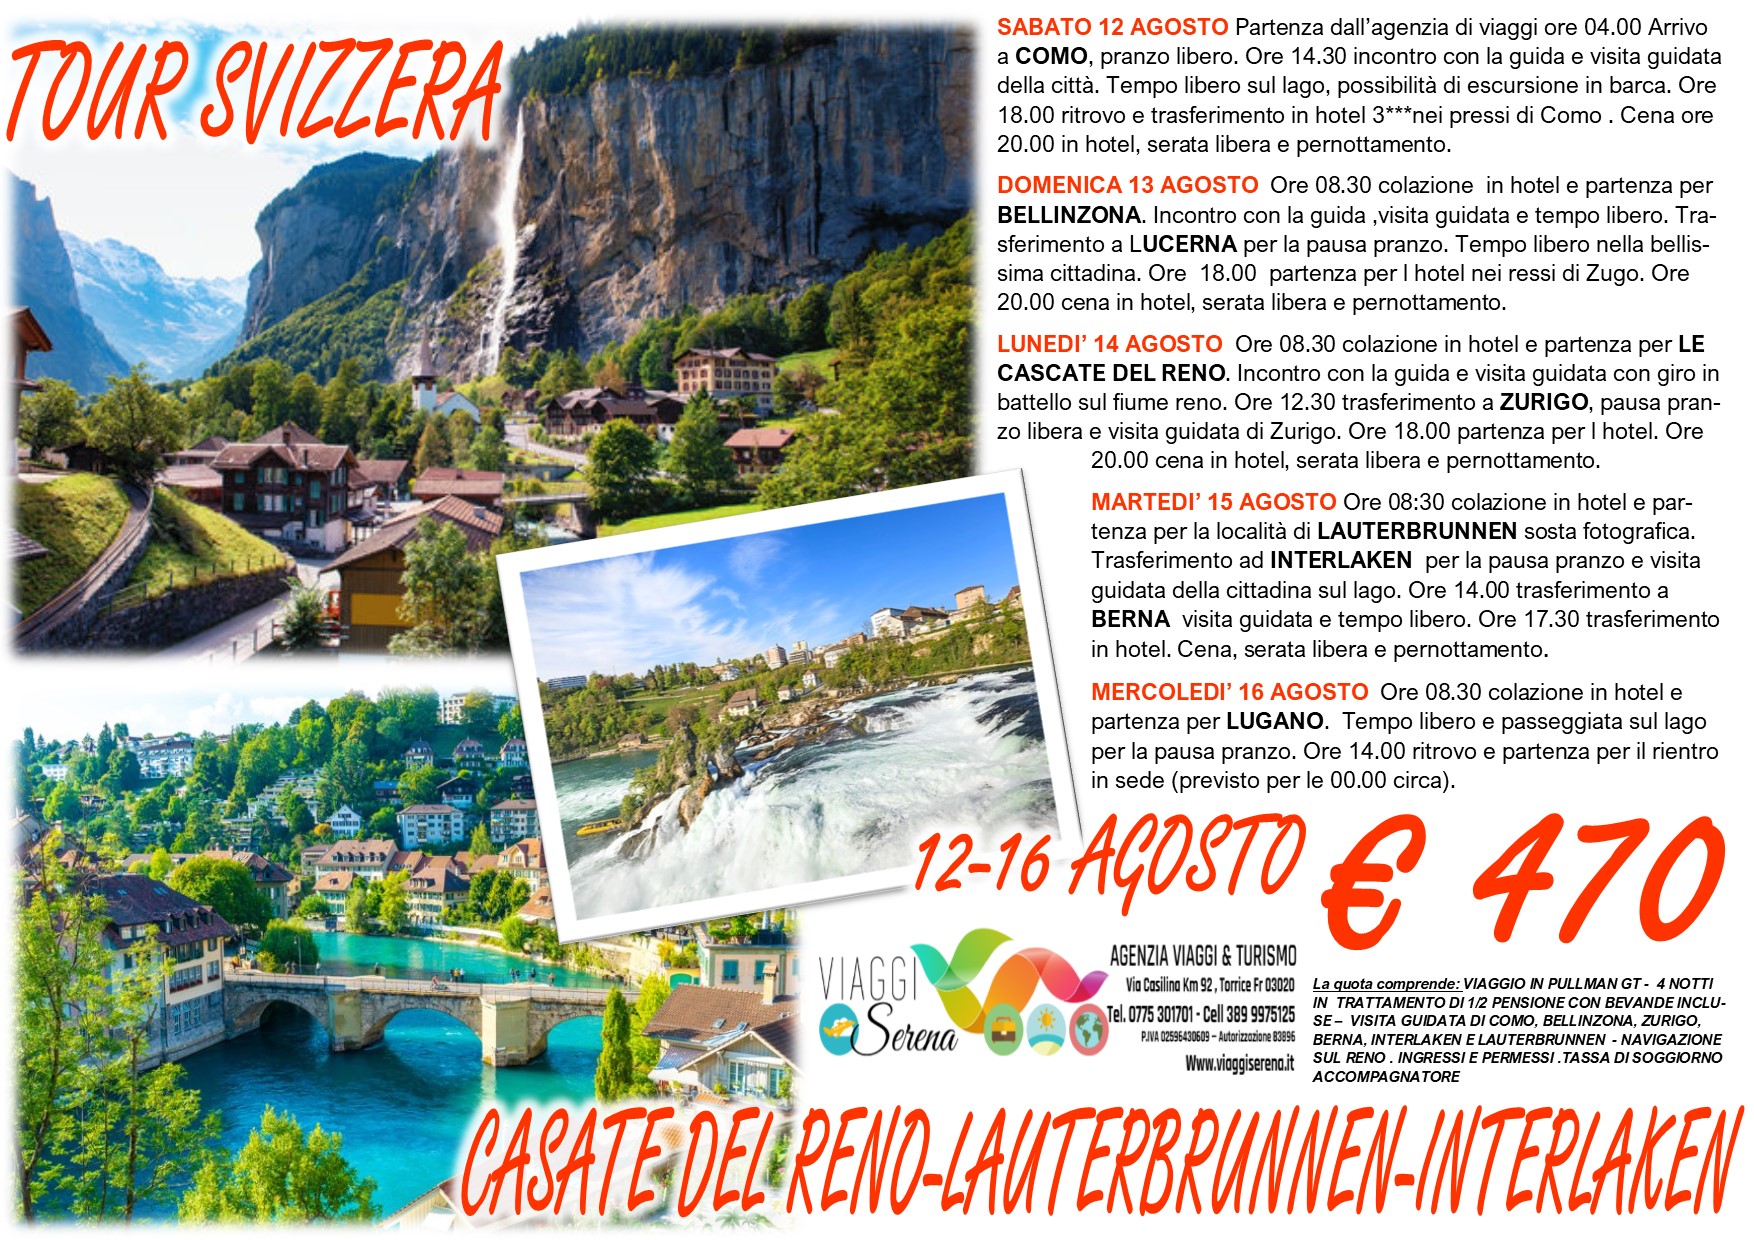 Viaggi di Gruppo: “Tour Svizzera” Lauterbrunnen, Interlaken, Cascate del Reno & Berna 12-16 Agosto €470,00